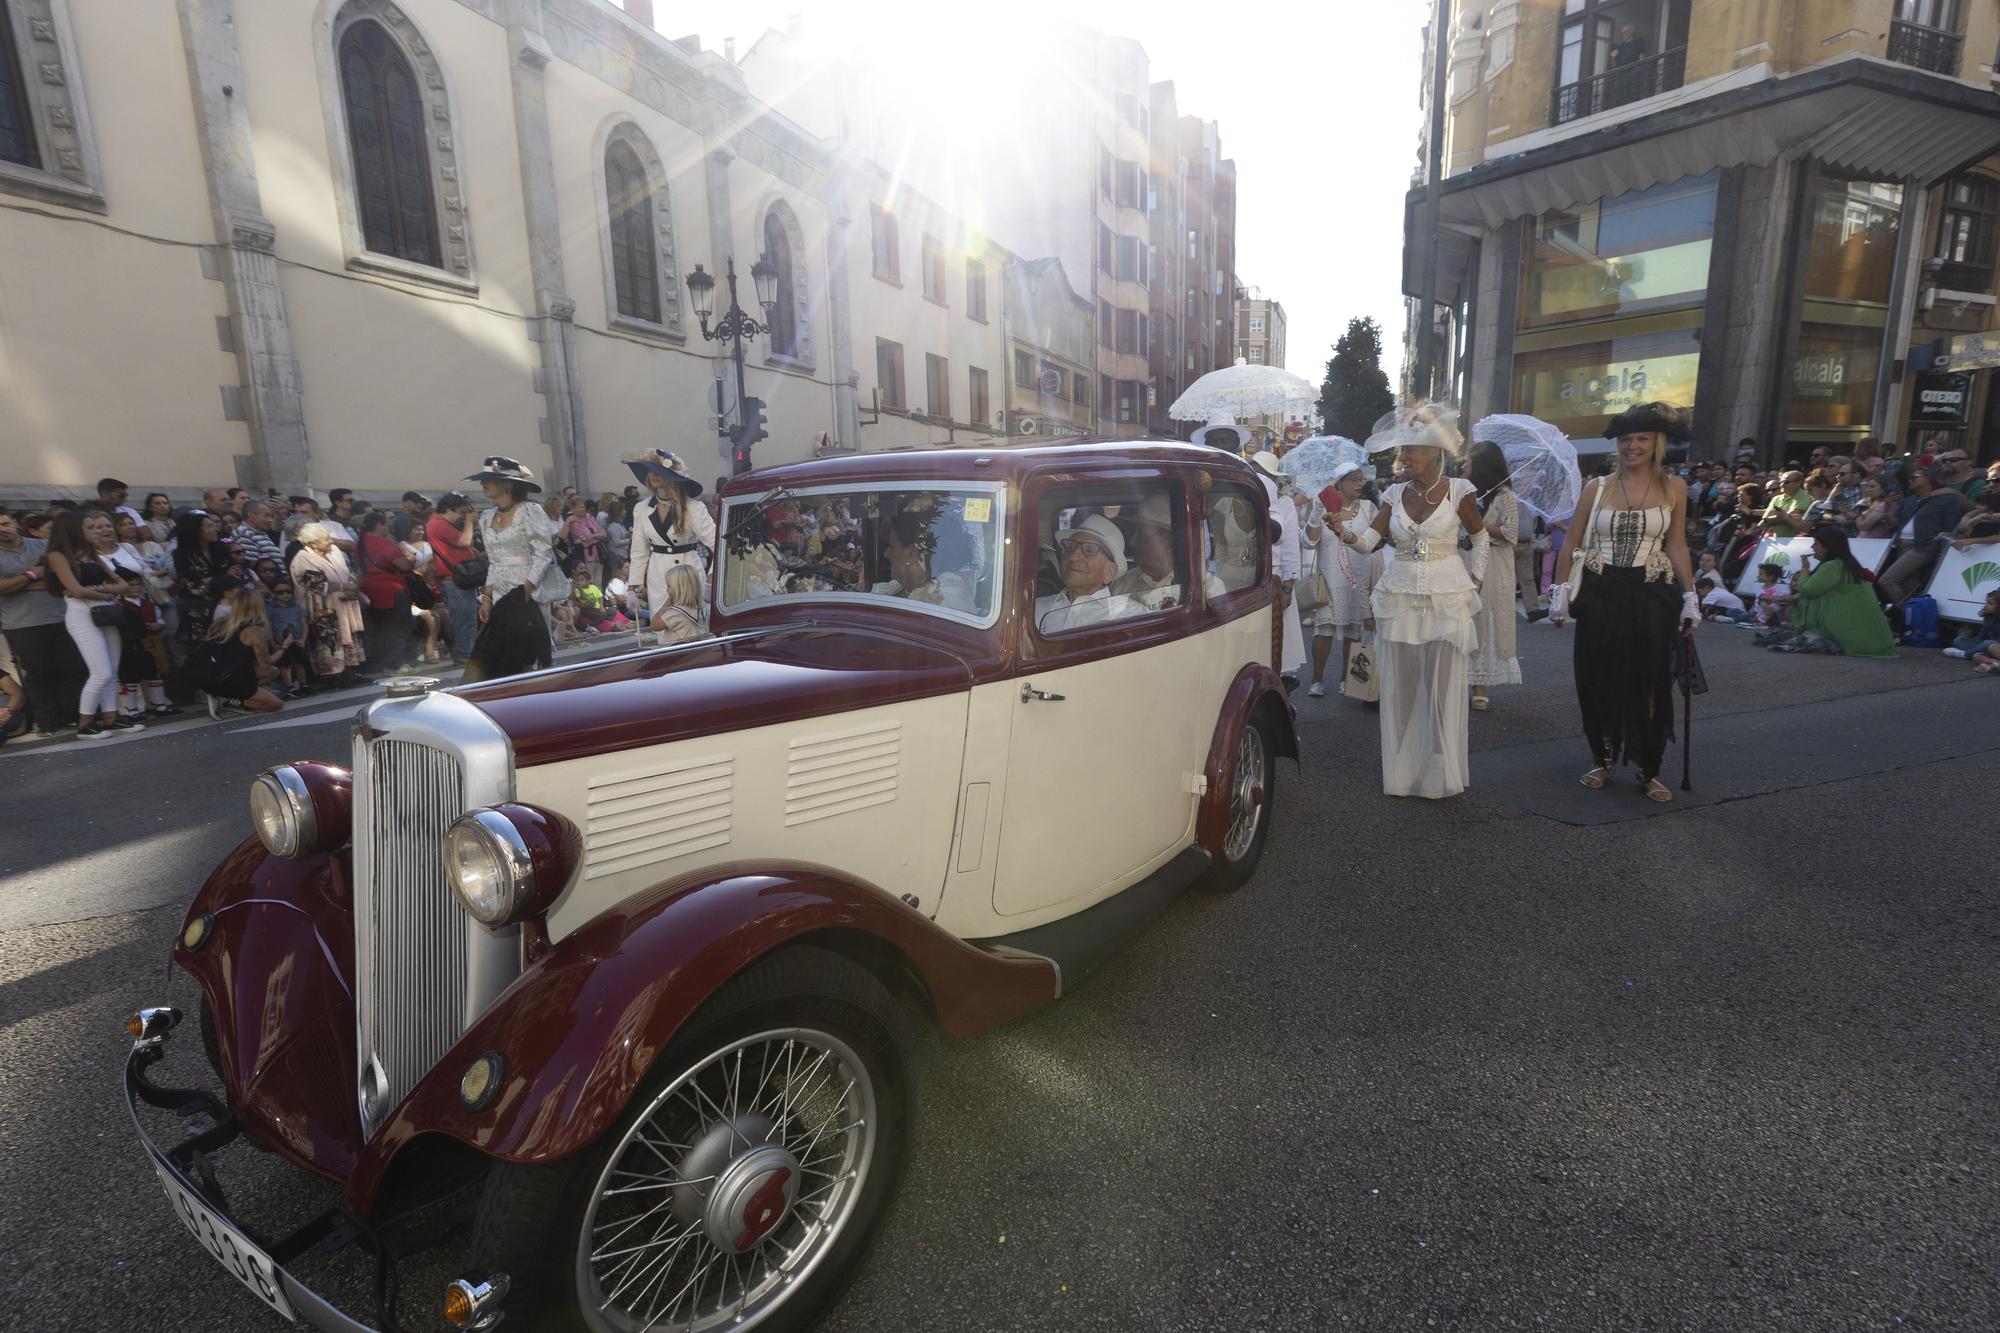 En Imágenes: El Desfile del Día de América llena las calles de Oviedo en una tarde veraniega